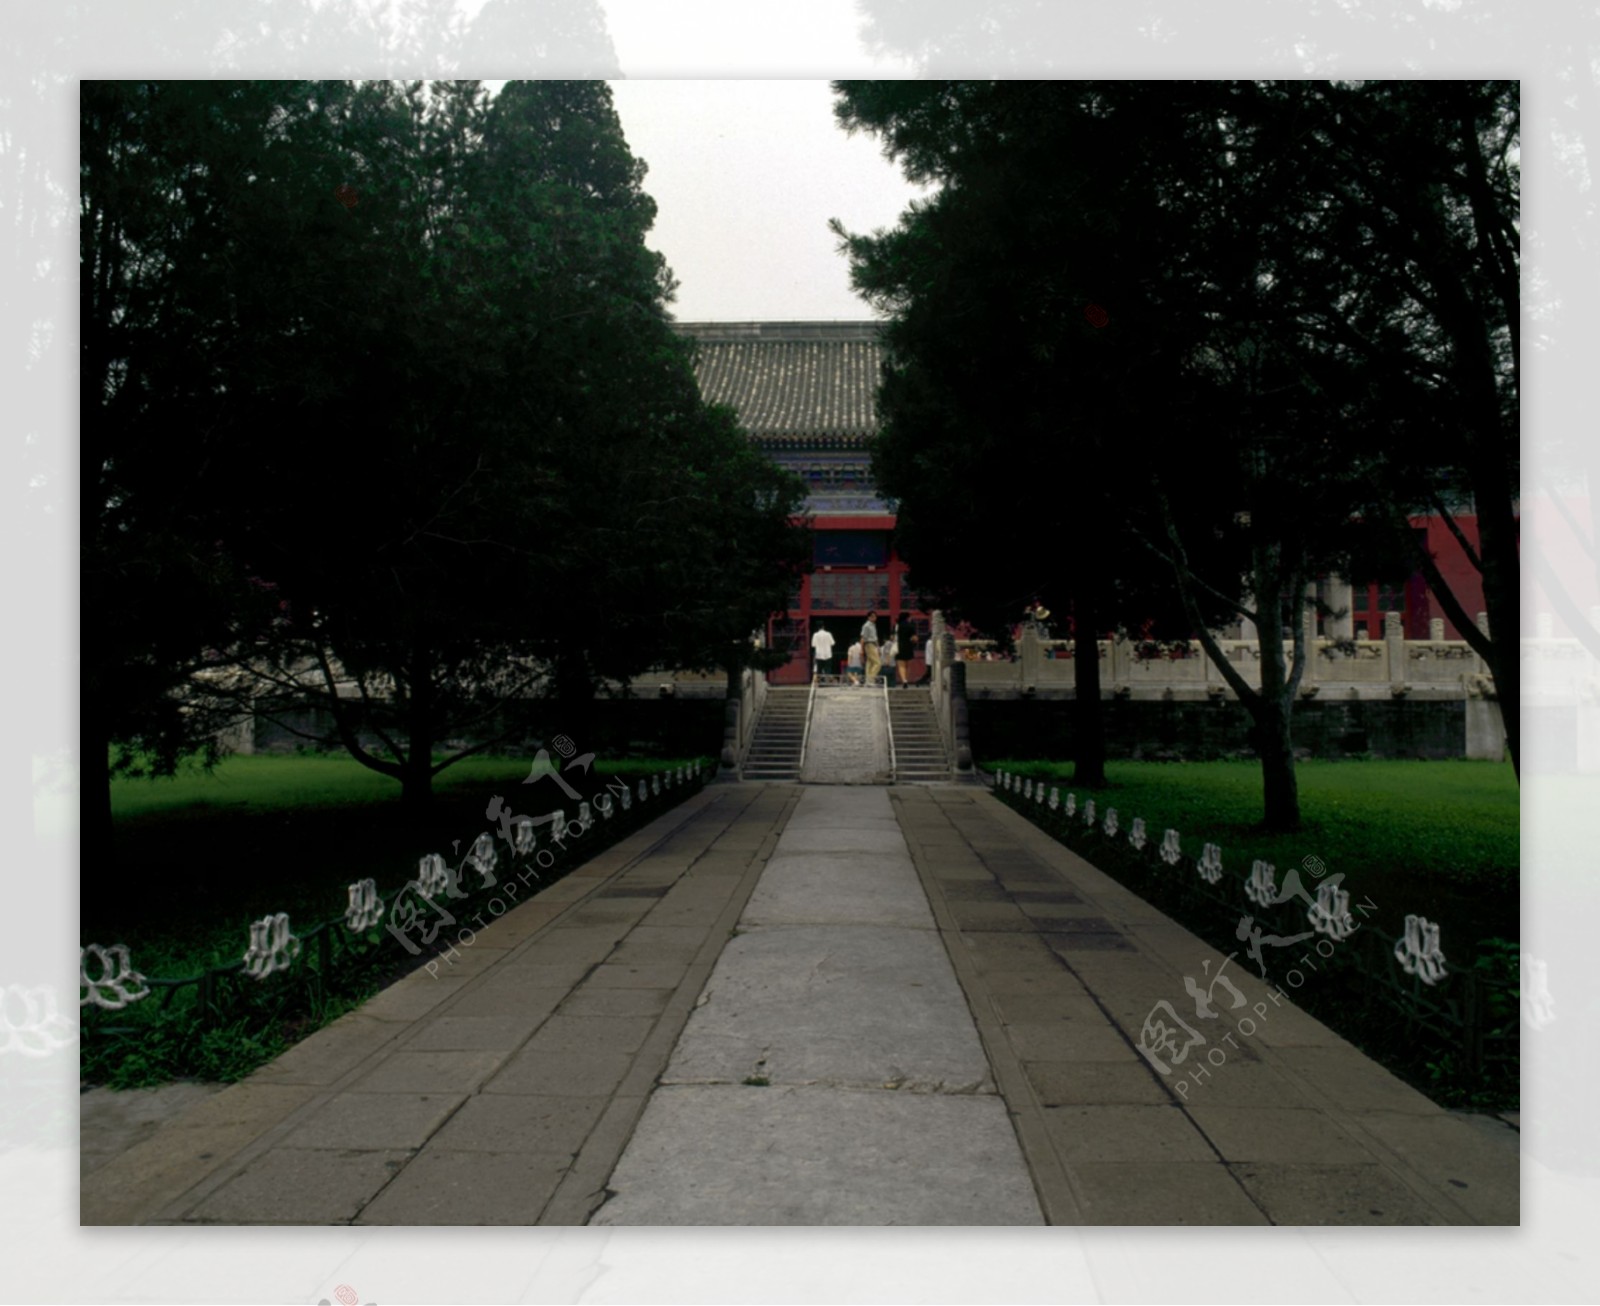 北京皇家园林素材图片对称宫殿园林设计